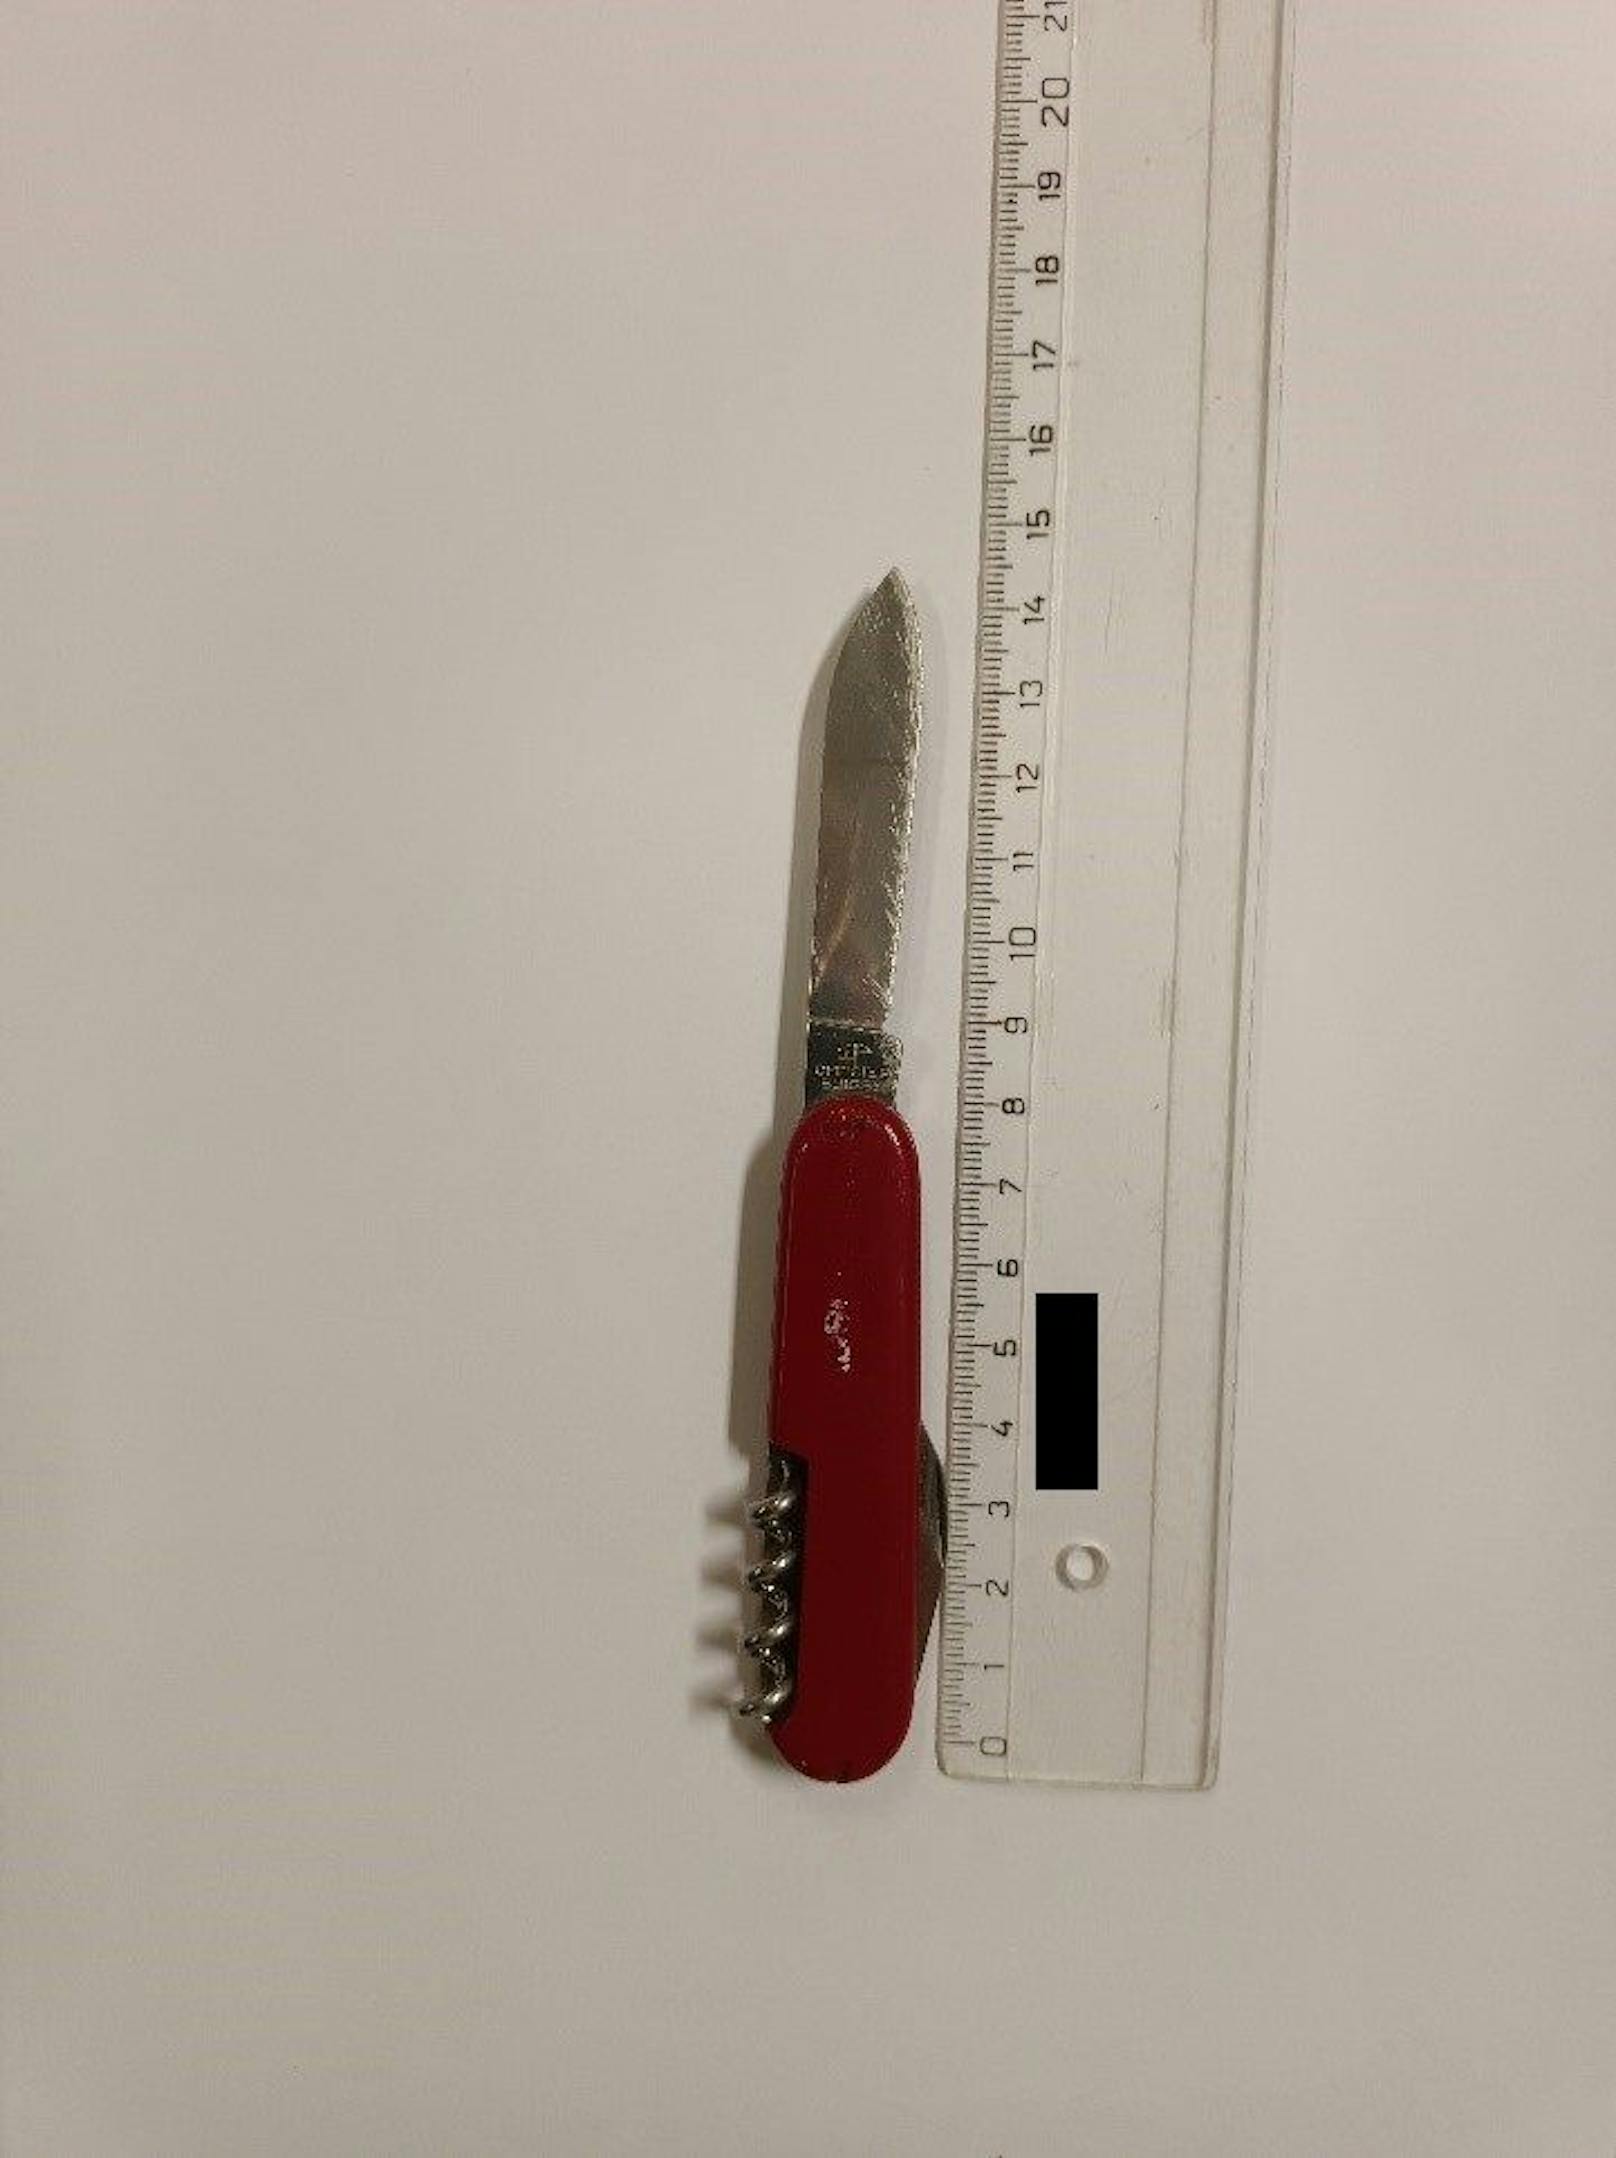 Mit diesem Messer bedrohte der 25-Jährige den Mann mit dem Umbringen.